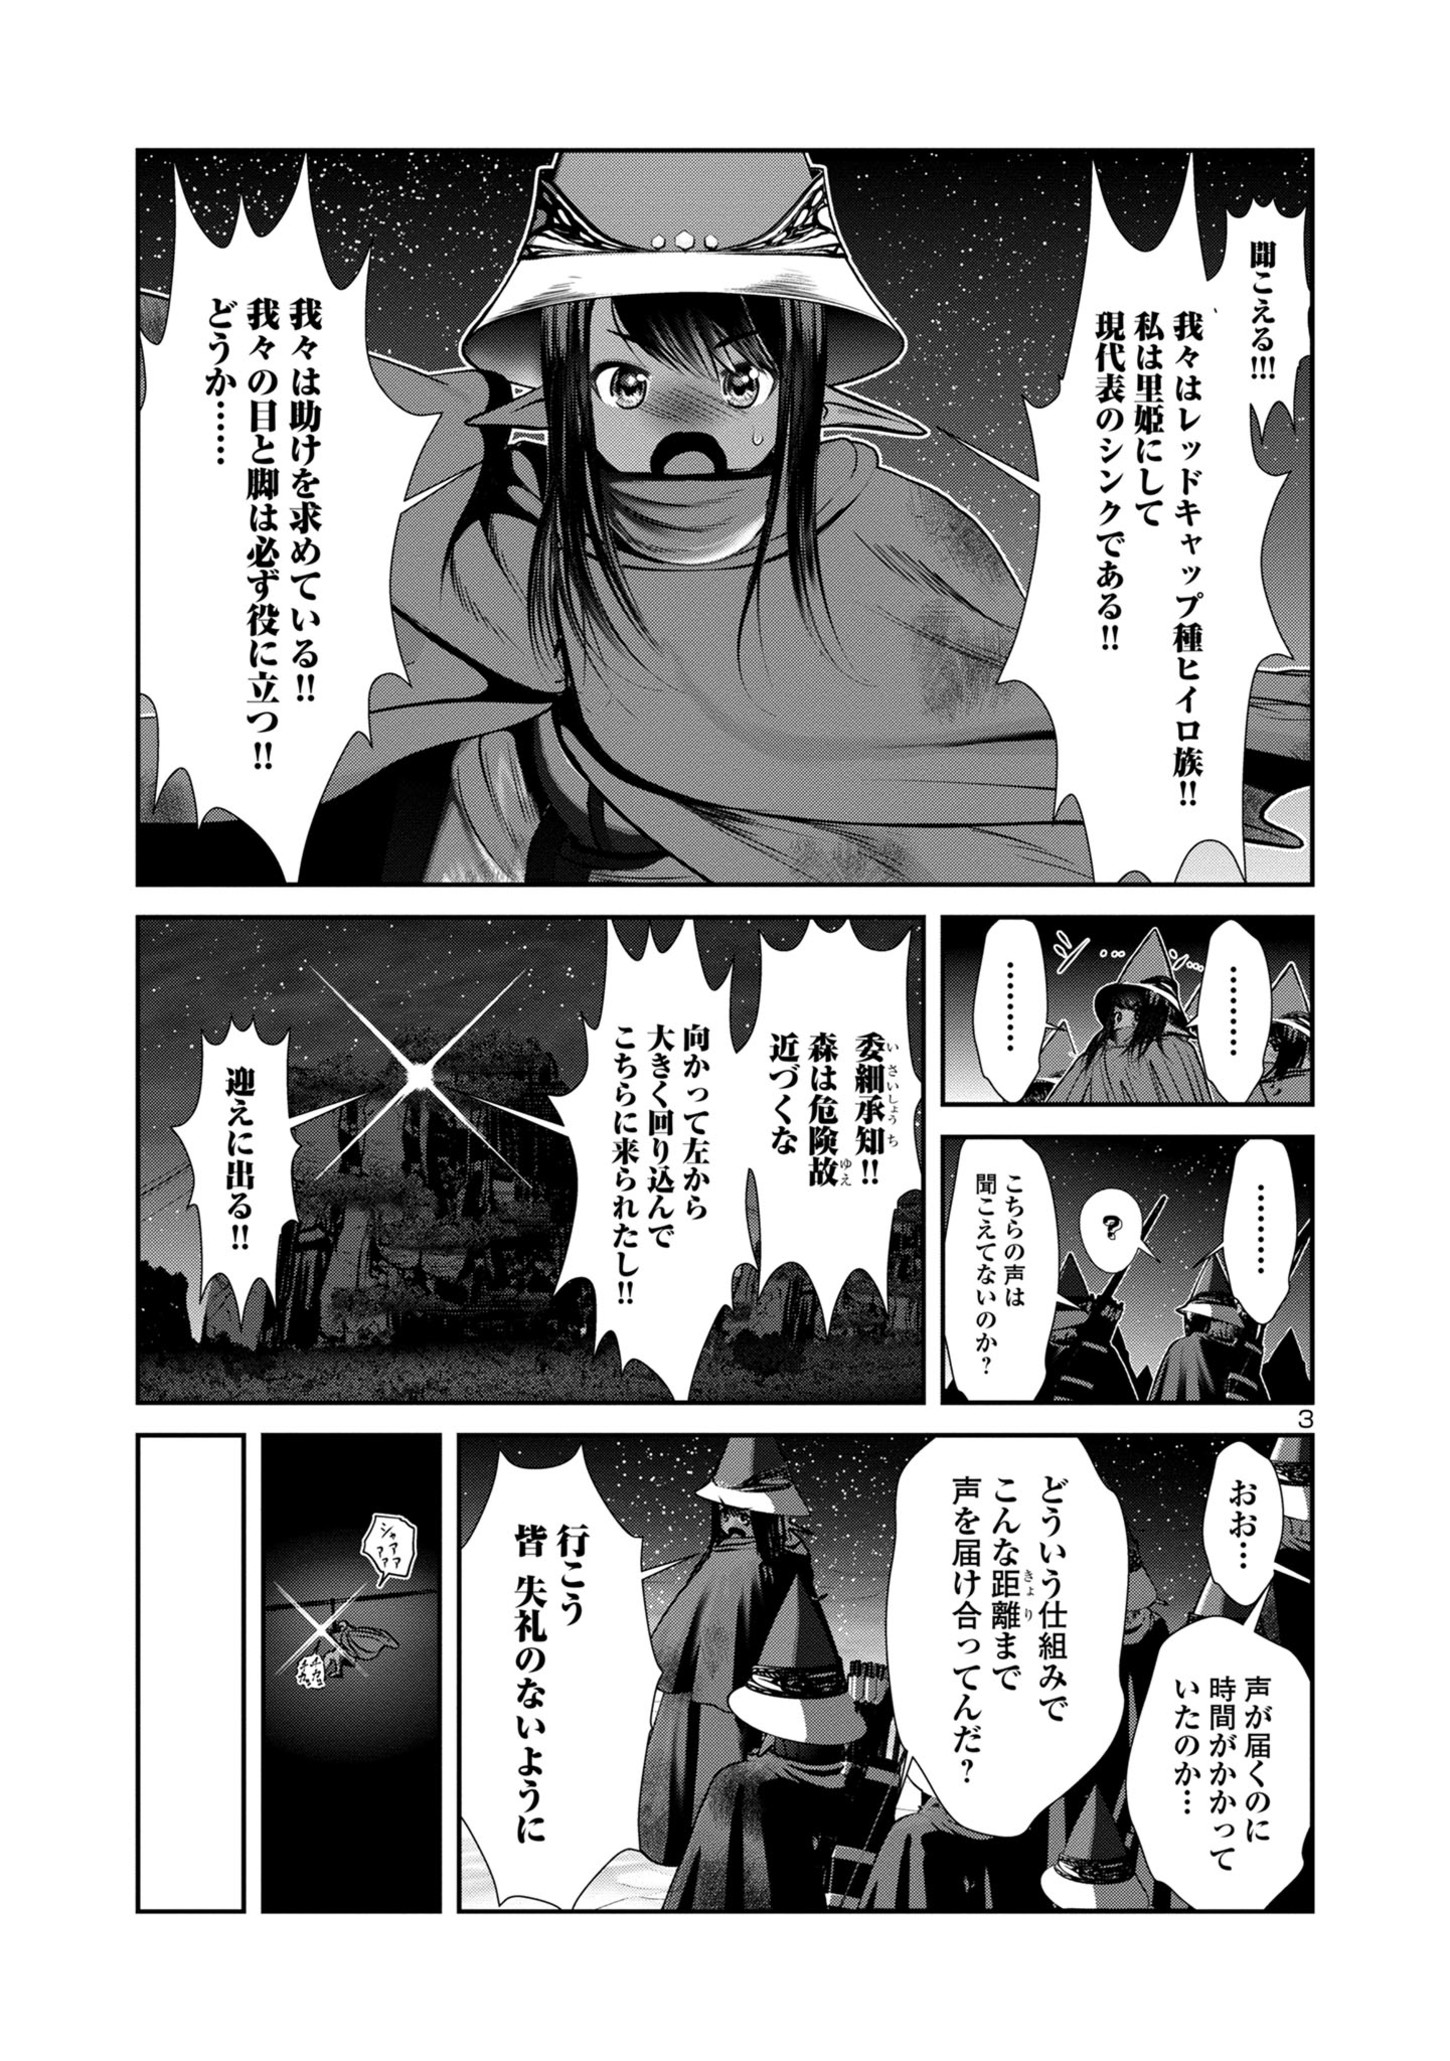 Kagakuteki ni Sonzai shiuru Creature Musume no Kansatsu Nisshi - Chapter 81 - Page 3